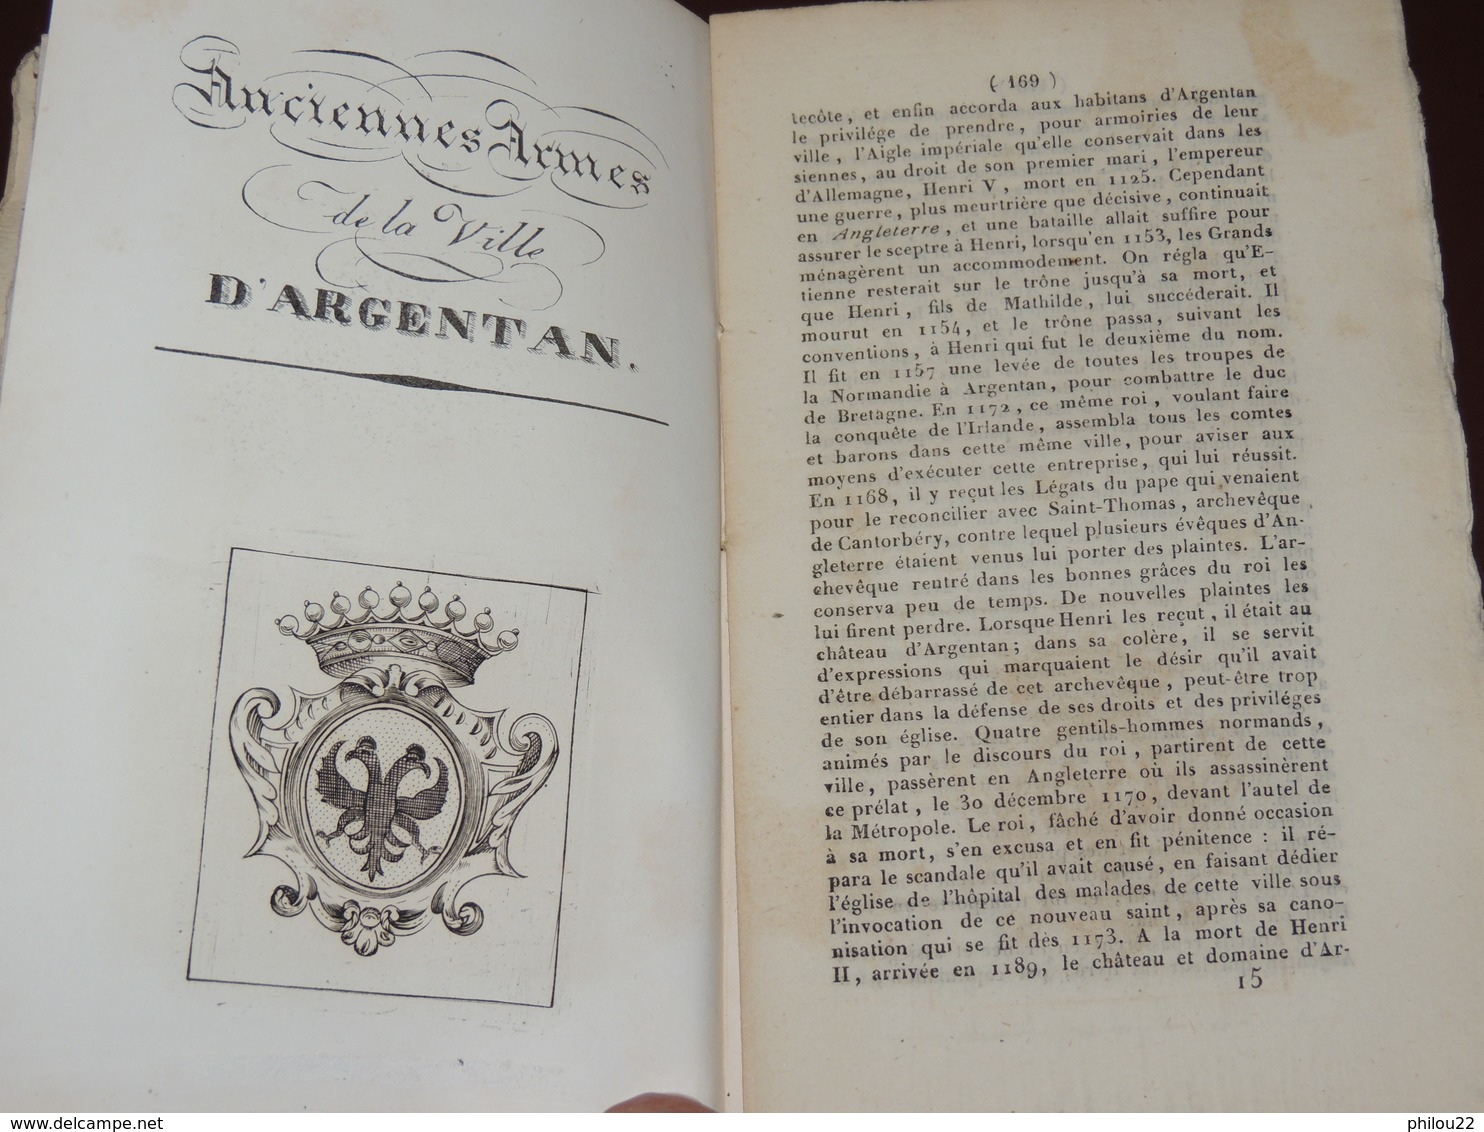 [NORMANDIE - ORNE]  Almanach argenténois pour 1836 - Rare publication d'Alençon